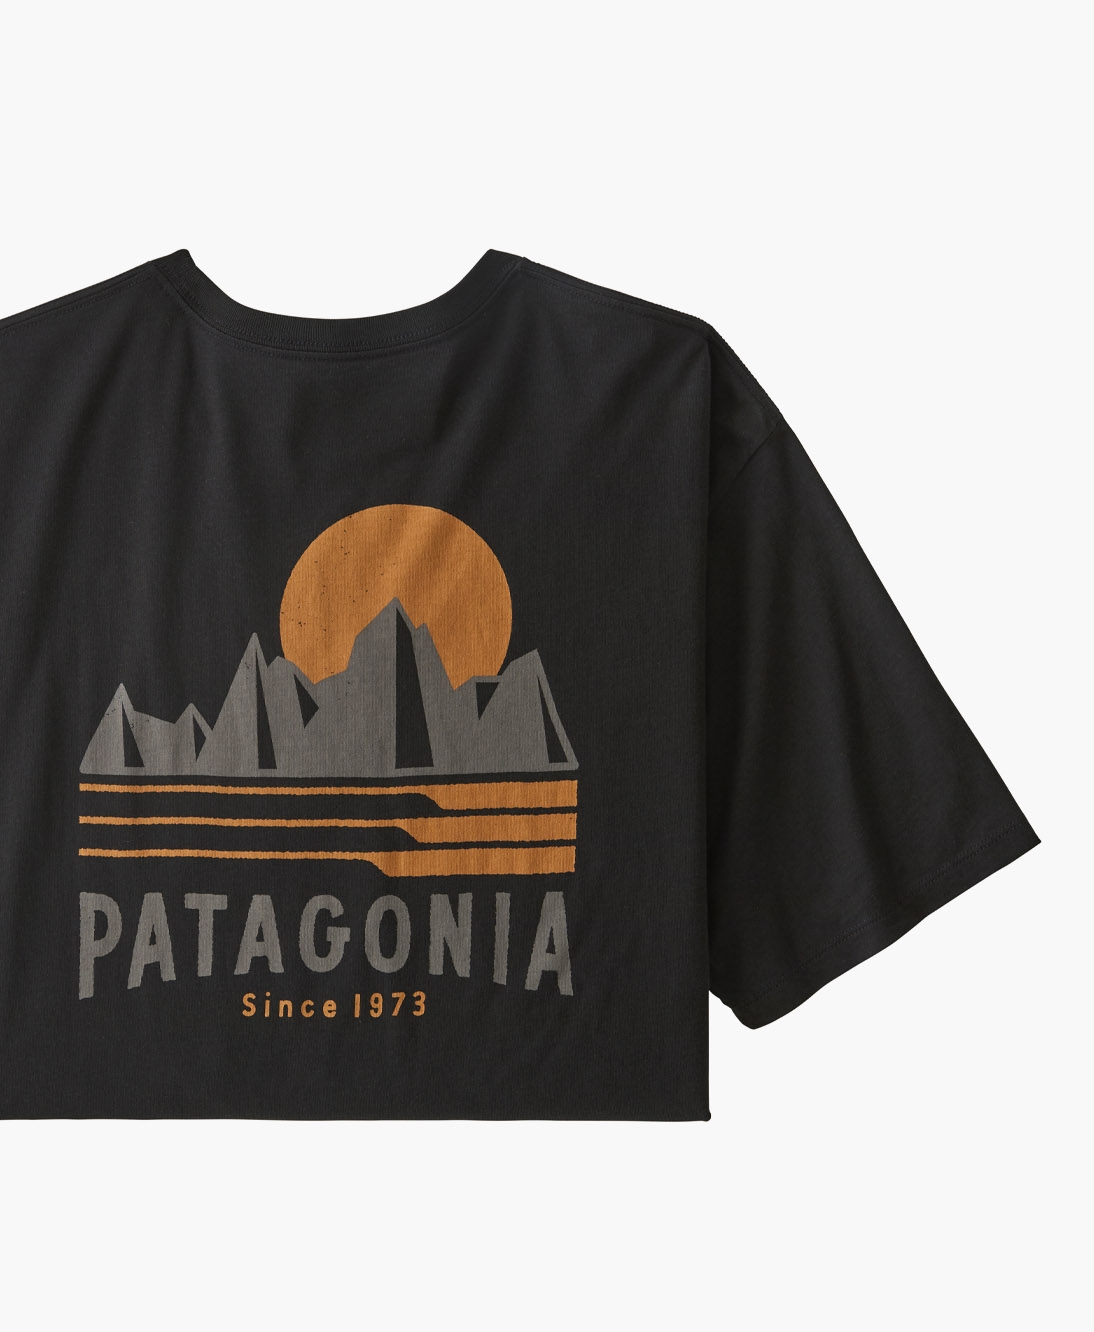 Patagonia - Tubes View Organic T-shirt